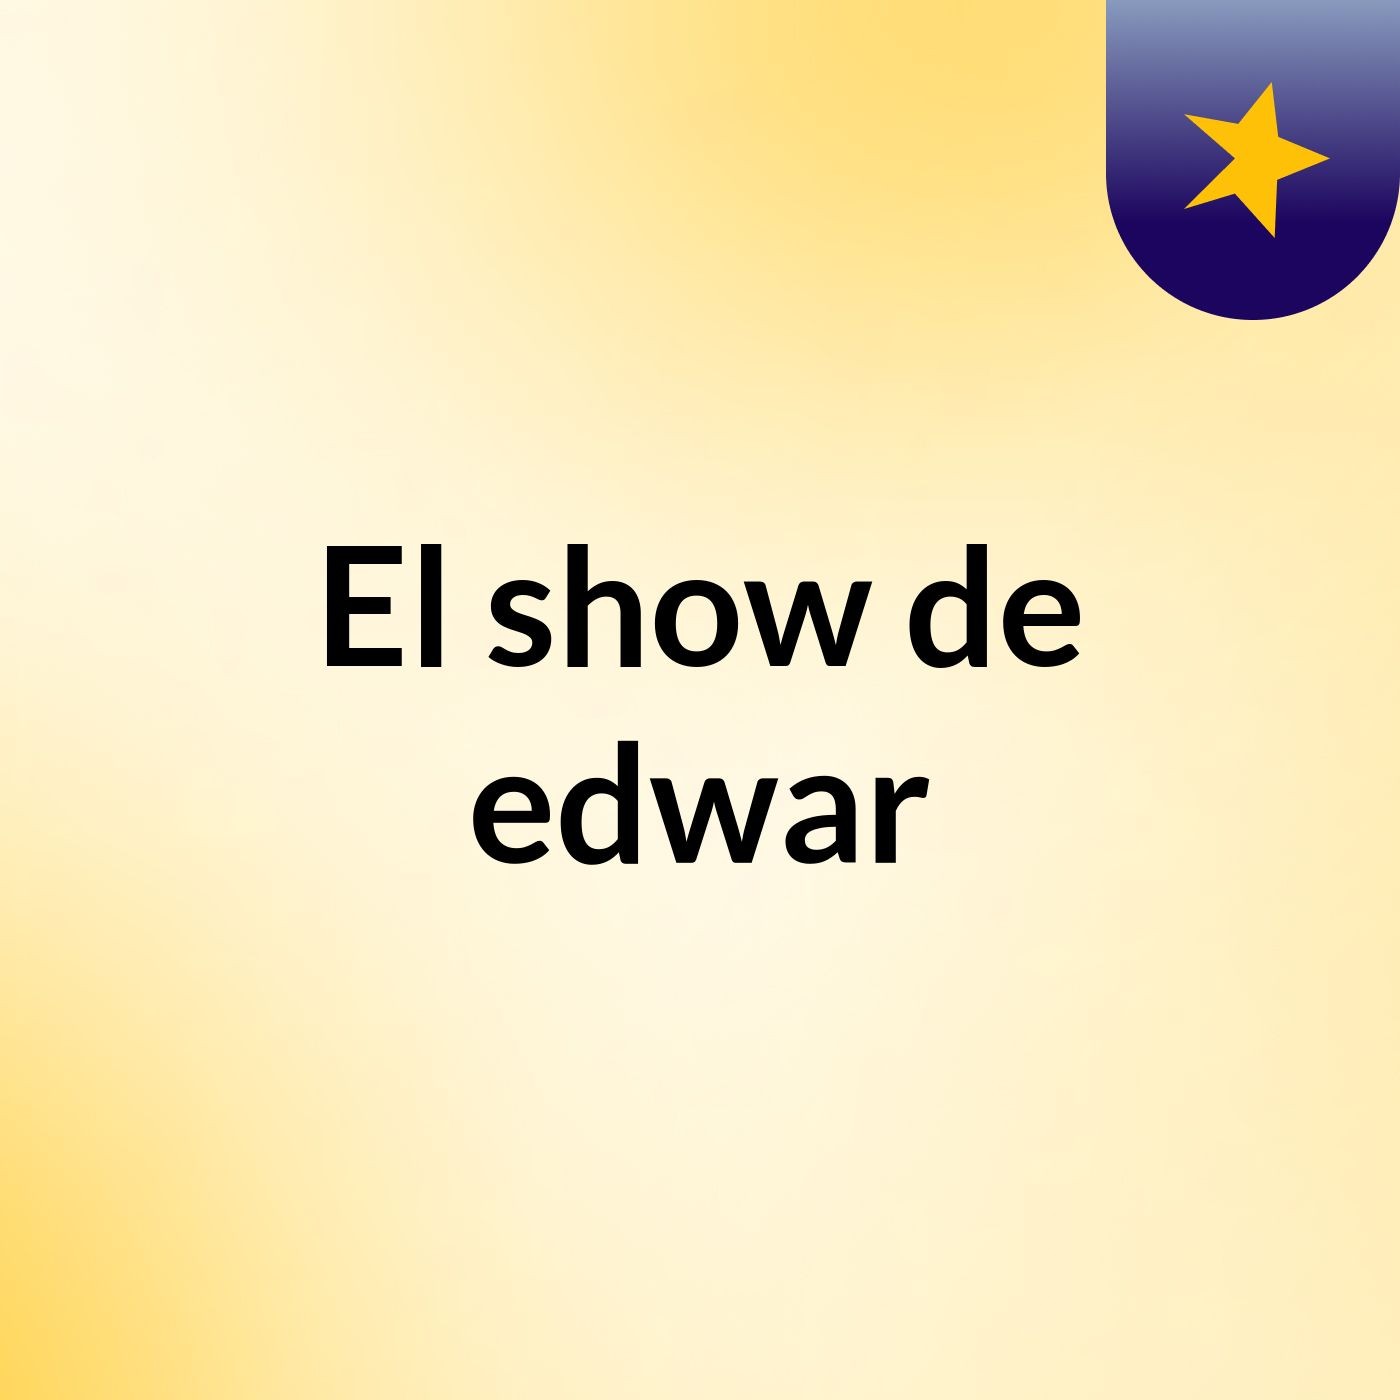 El show de edwar